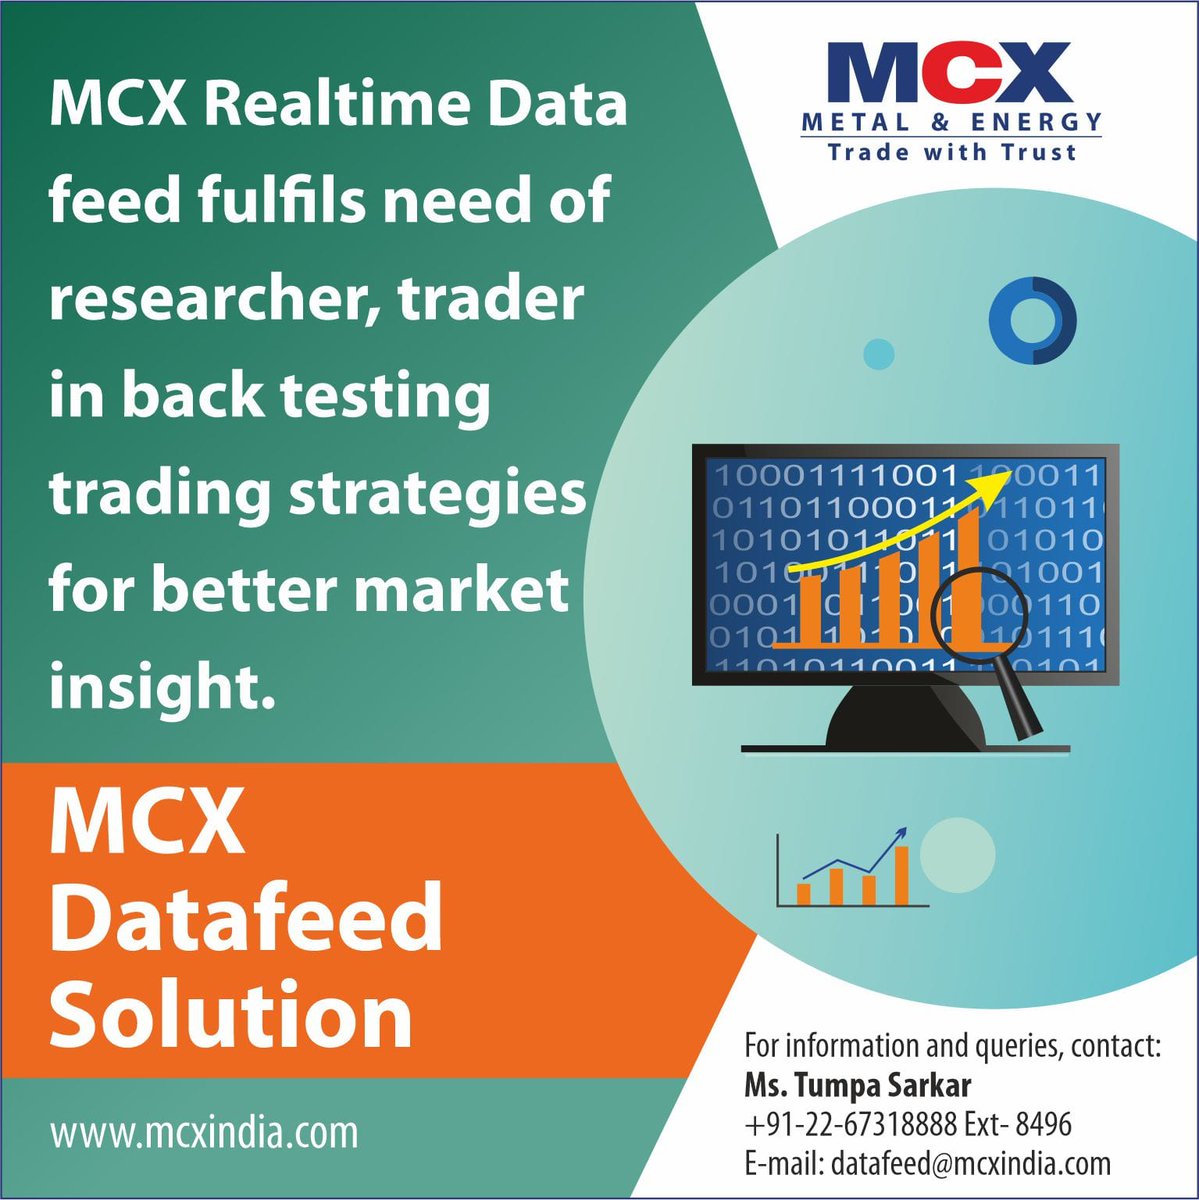 𝐌𝐂𝐗 𝐃𝐚𝐭𝐚𝐟𝐞𝐞𝐝 𝐒𝐨𝐥𝐮𝐭𝐢𝐨𝐧 
#MCX #CommodityMarket #DataAnalysis #ResearchData #MCXDatafeeds #Realtimedatafeed